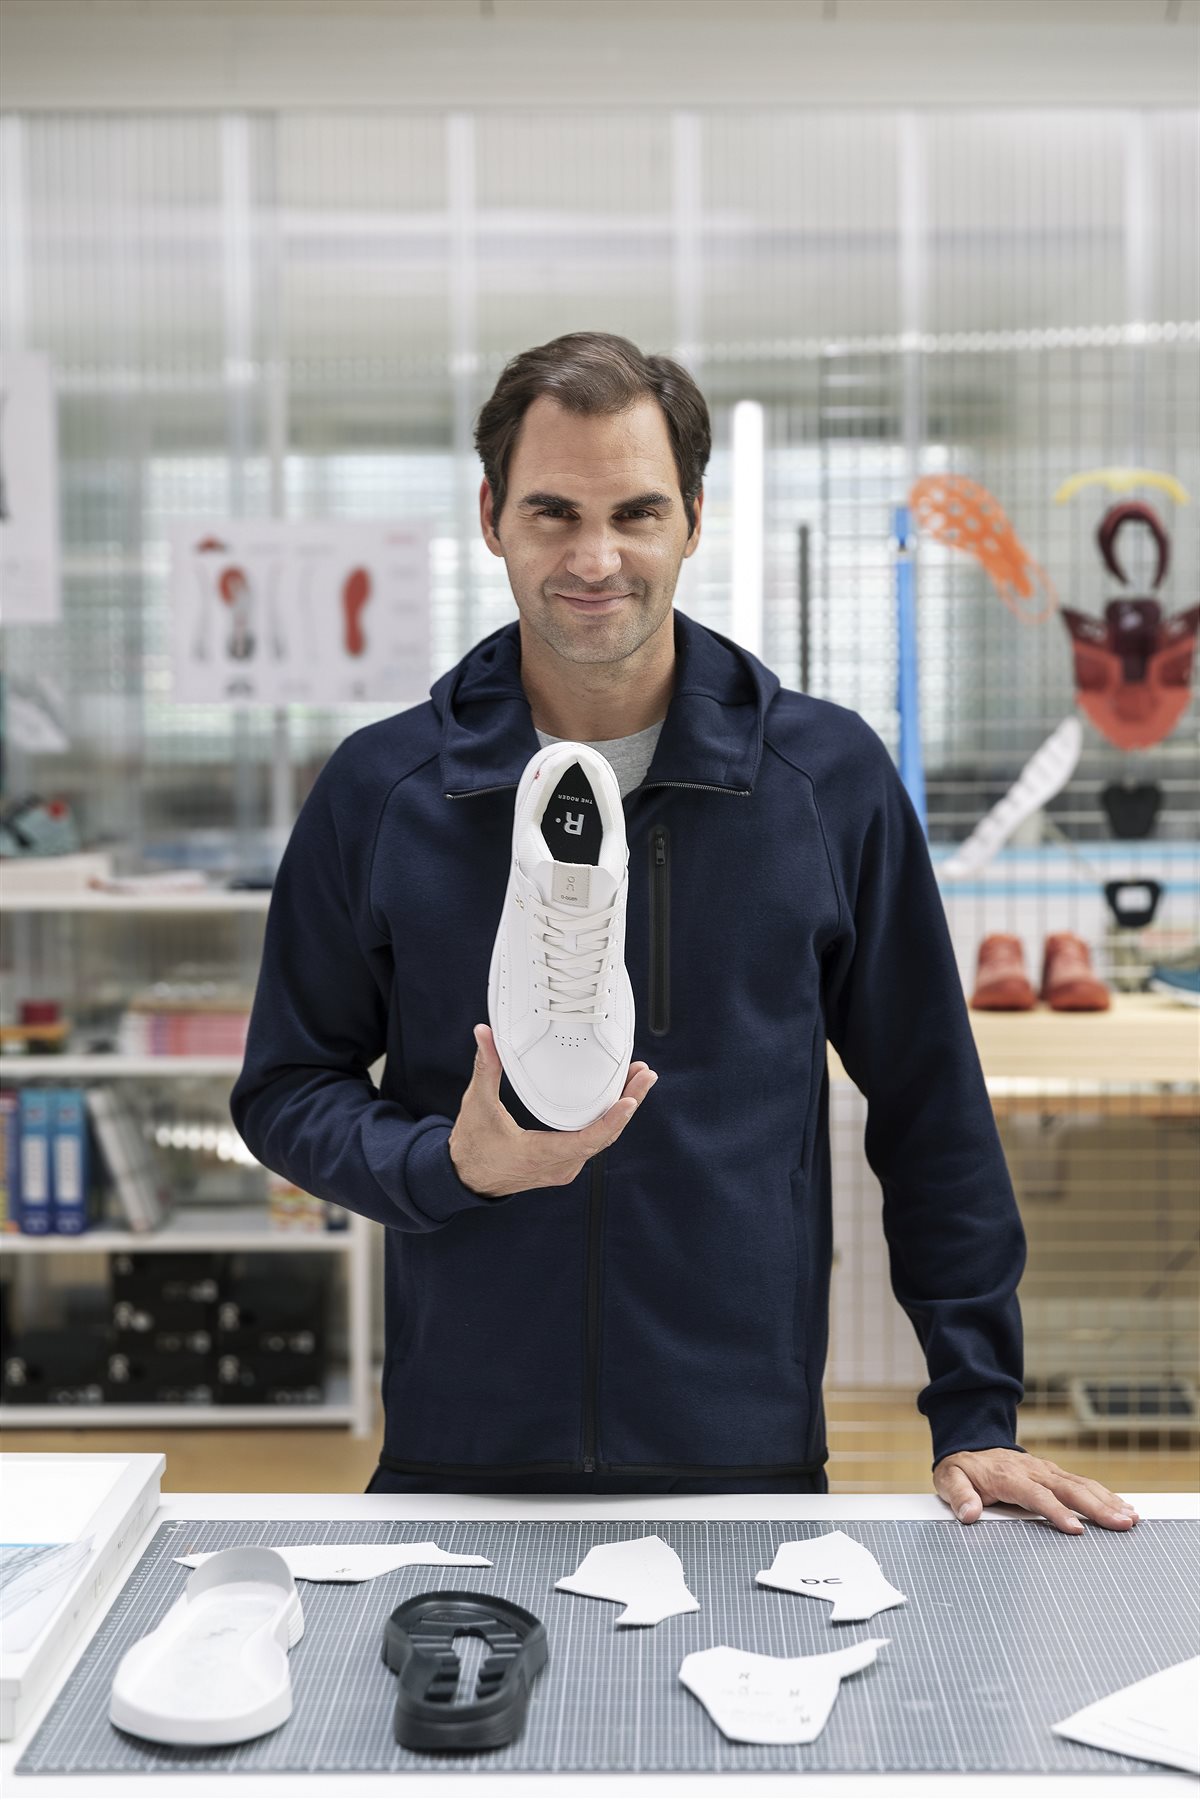 5Roger Federer On Lab Zürich